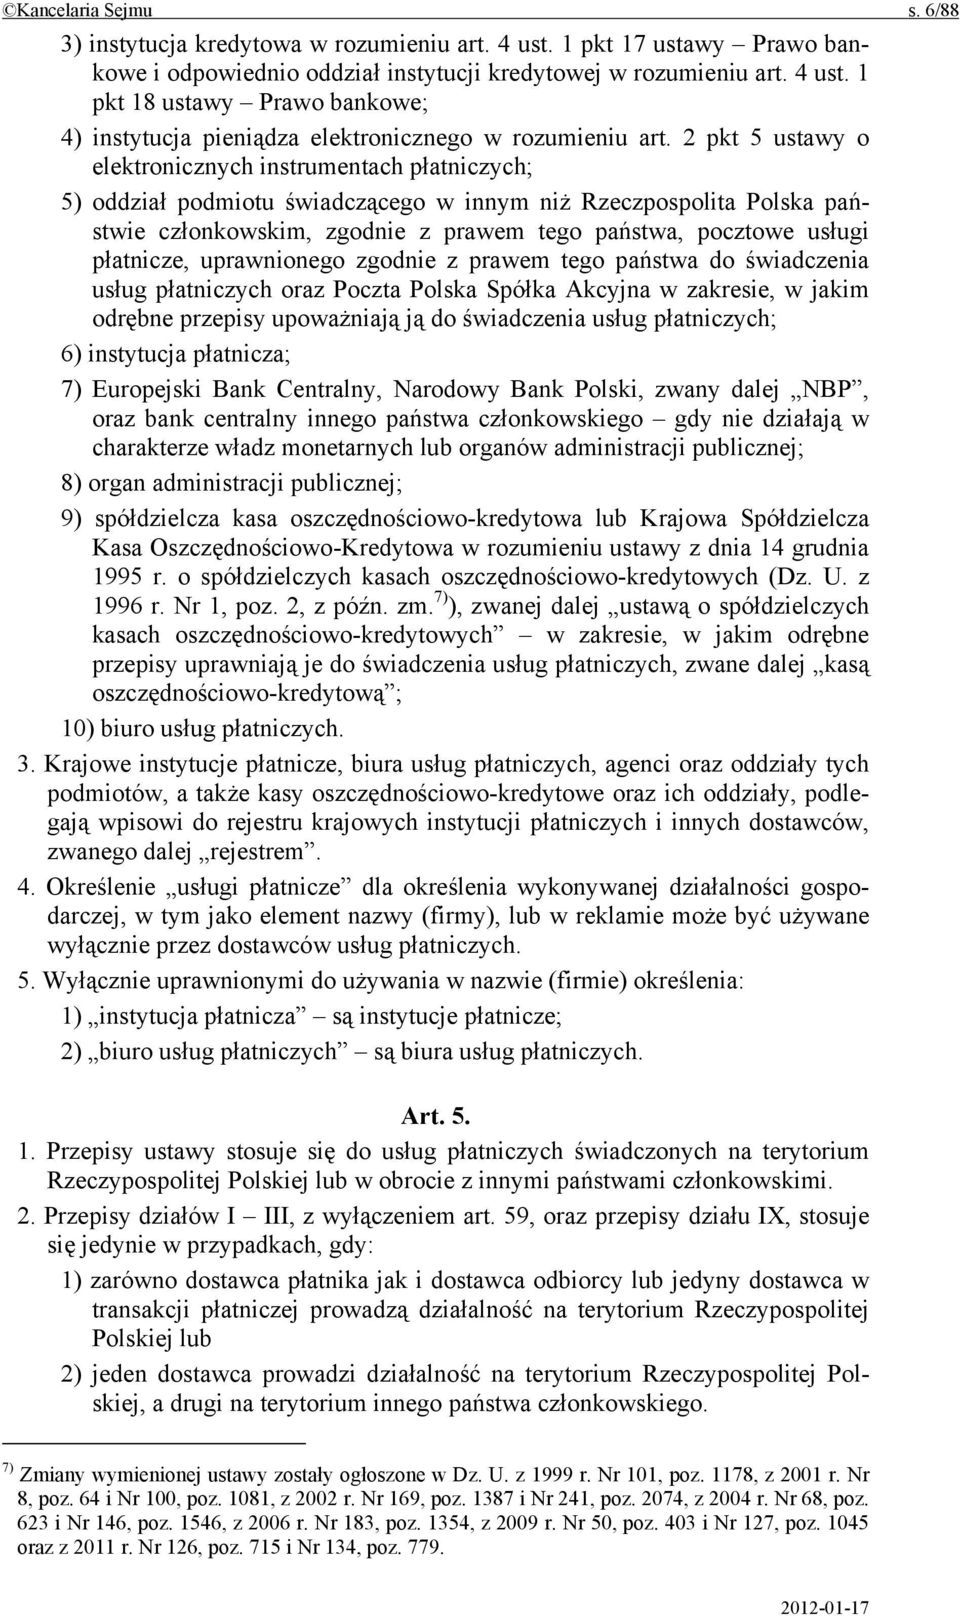 płatnicze, uprawnionego zgodnie z prawem tego państwa do świadczenia usług płatniczych oraz Poczta Polska Spółka Akcyjna w zakresie, w jakim odrębne przepisy upoważniają ją do świadczenia usług